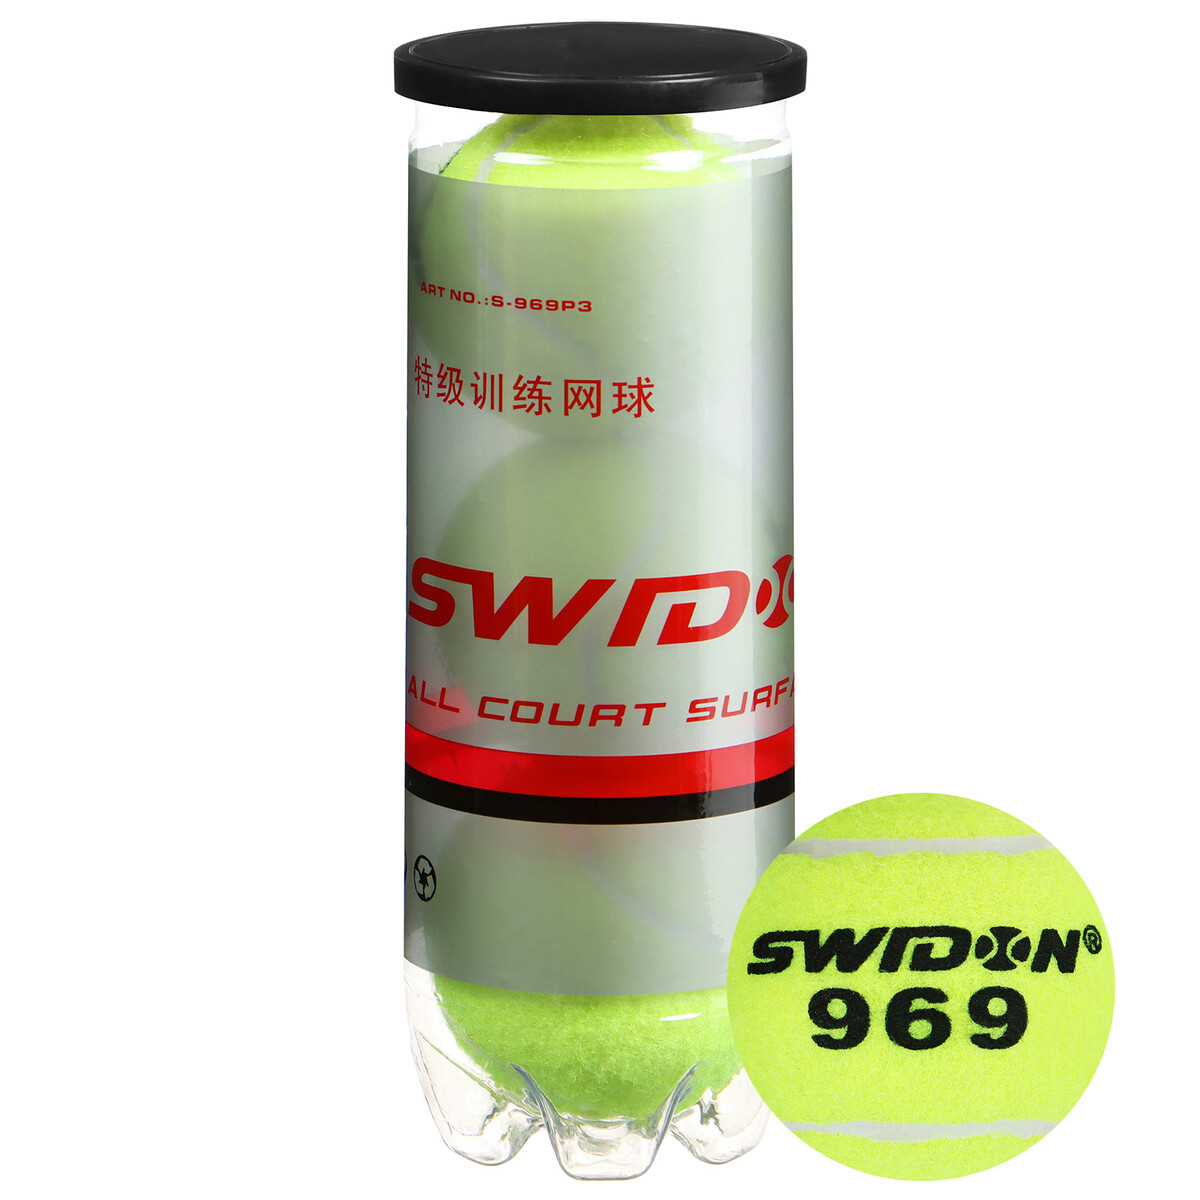      swidon 969 , 3 